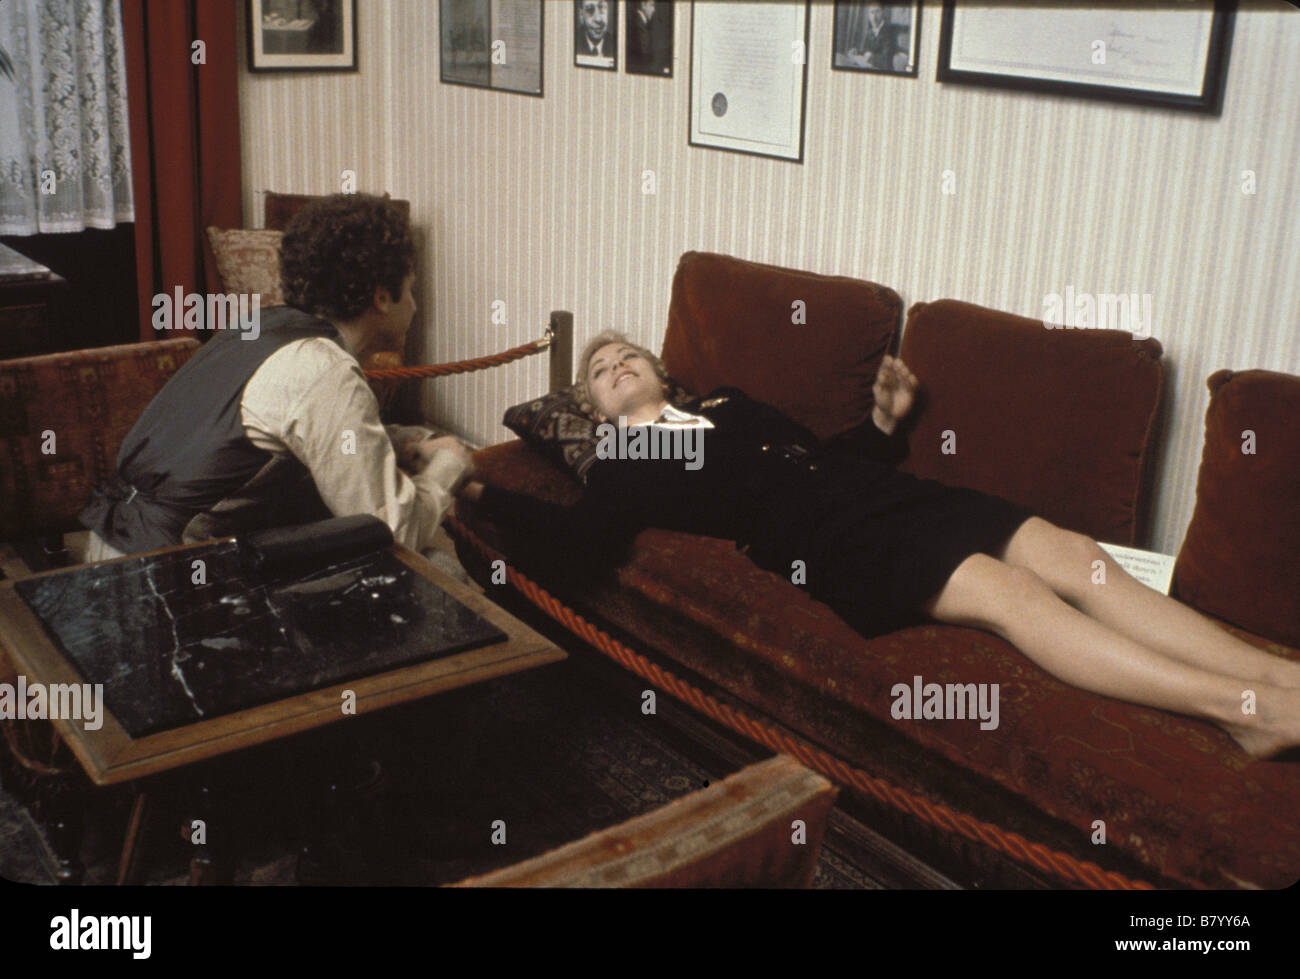 Cattiva temporizzazione Anno: 1980 - REGNO UNITO Art Garfunkel Theresa Russell Direttore: Nicolas Roeg Foto Stock